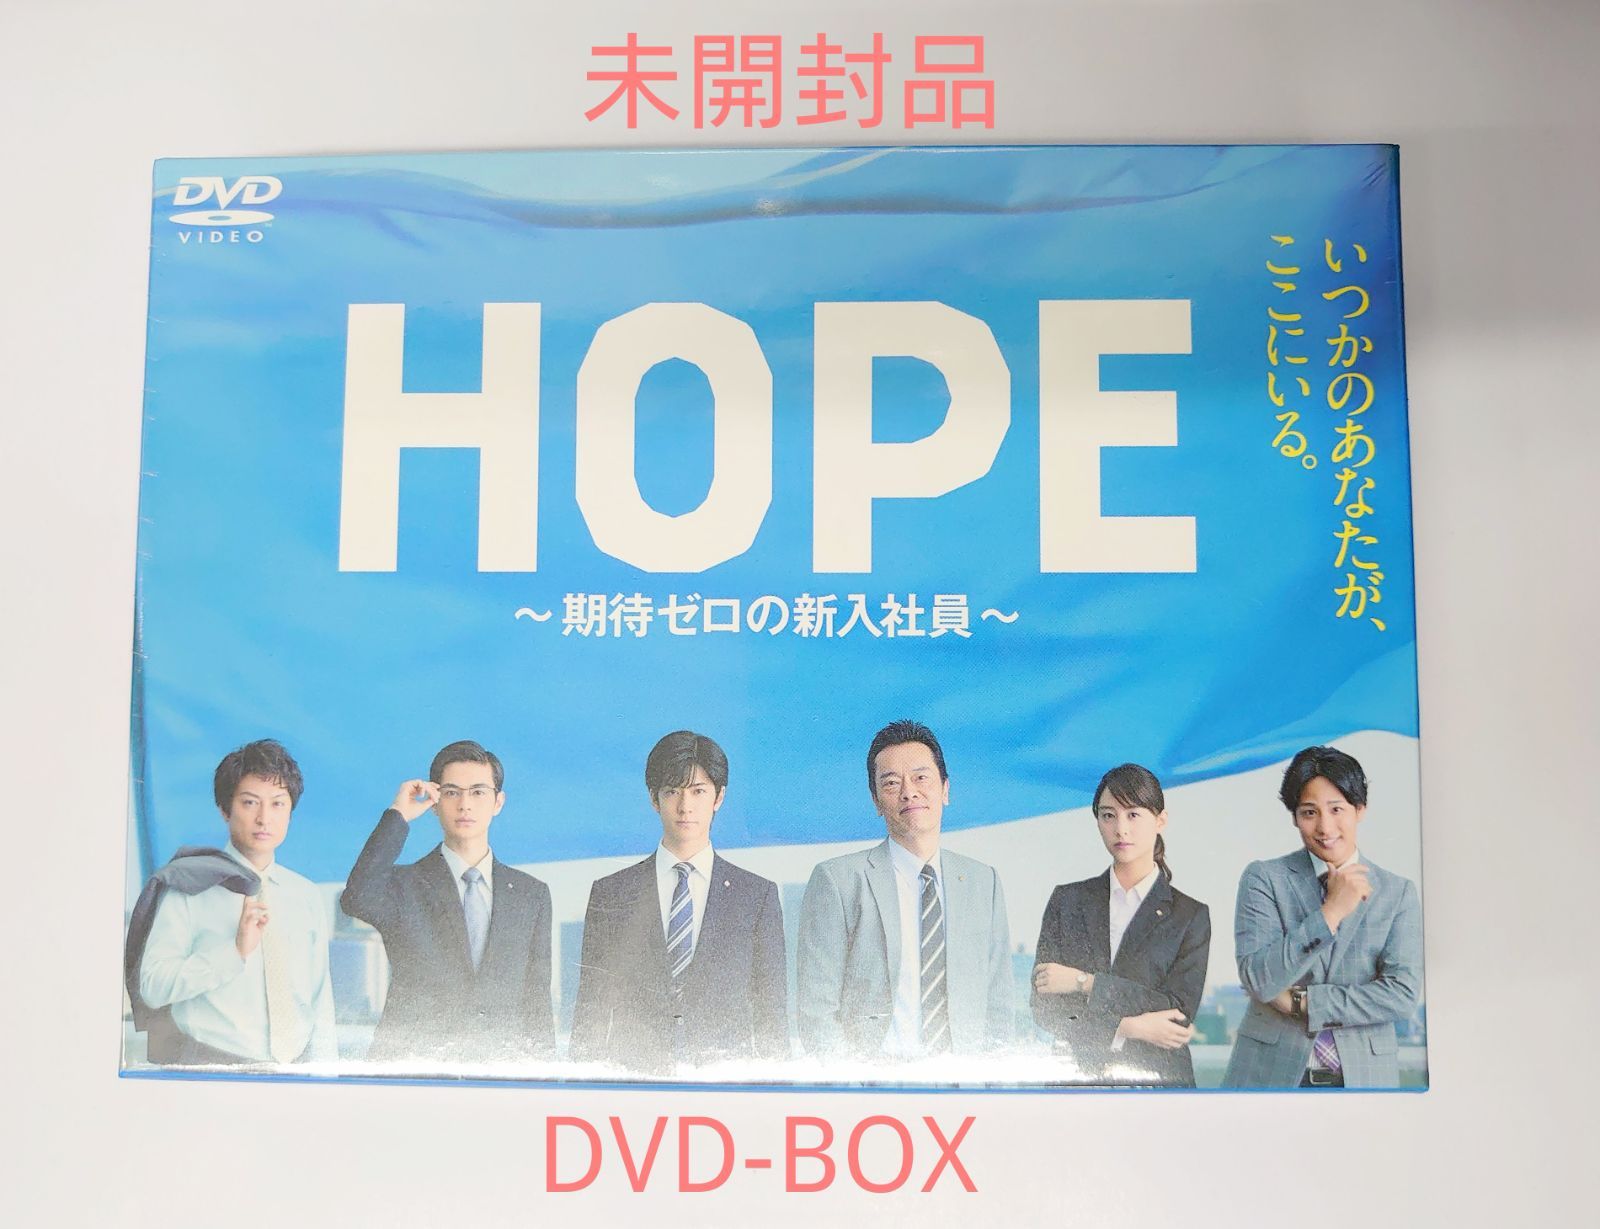 HOPE~期待ゼロの新入社員~ DVD BOX - テレビドラマ